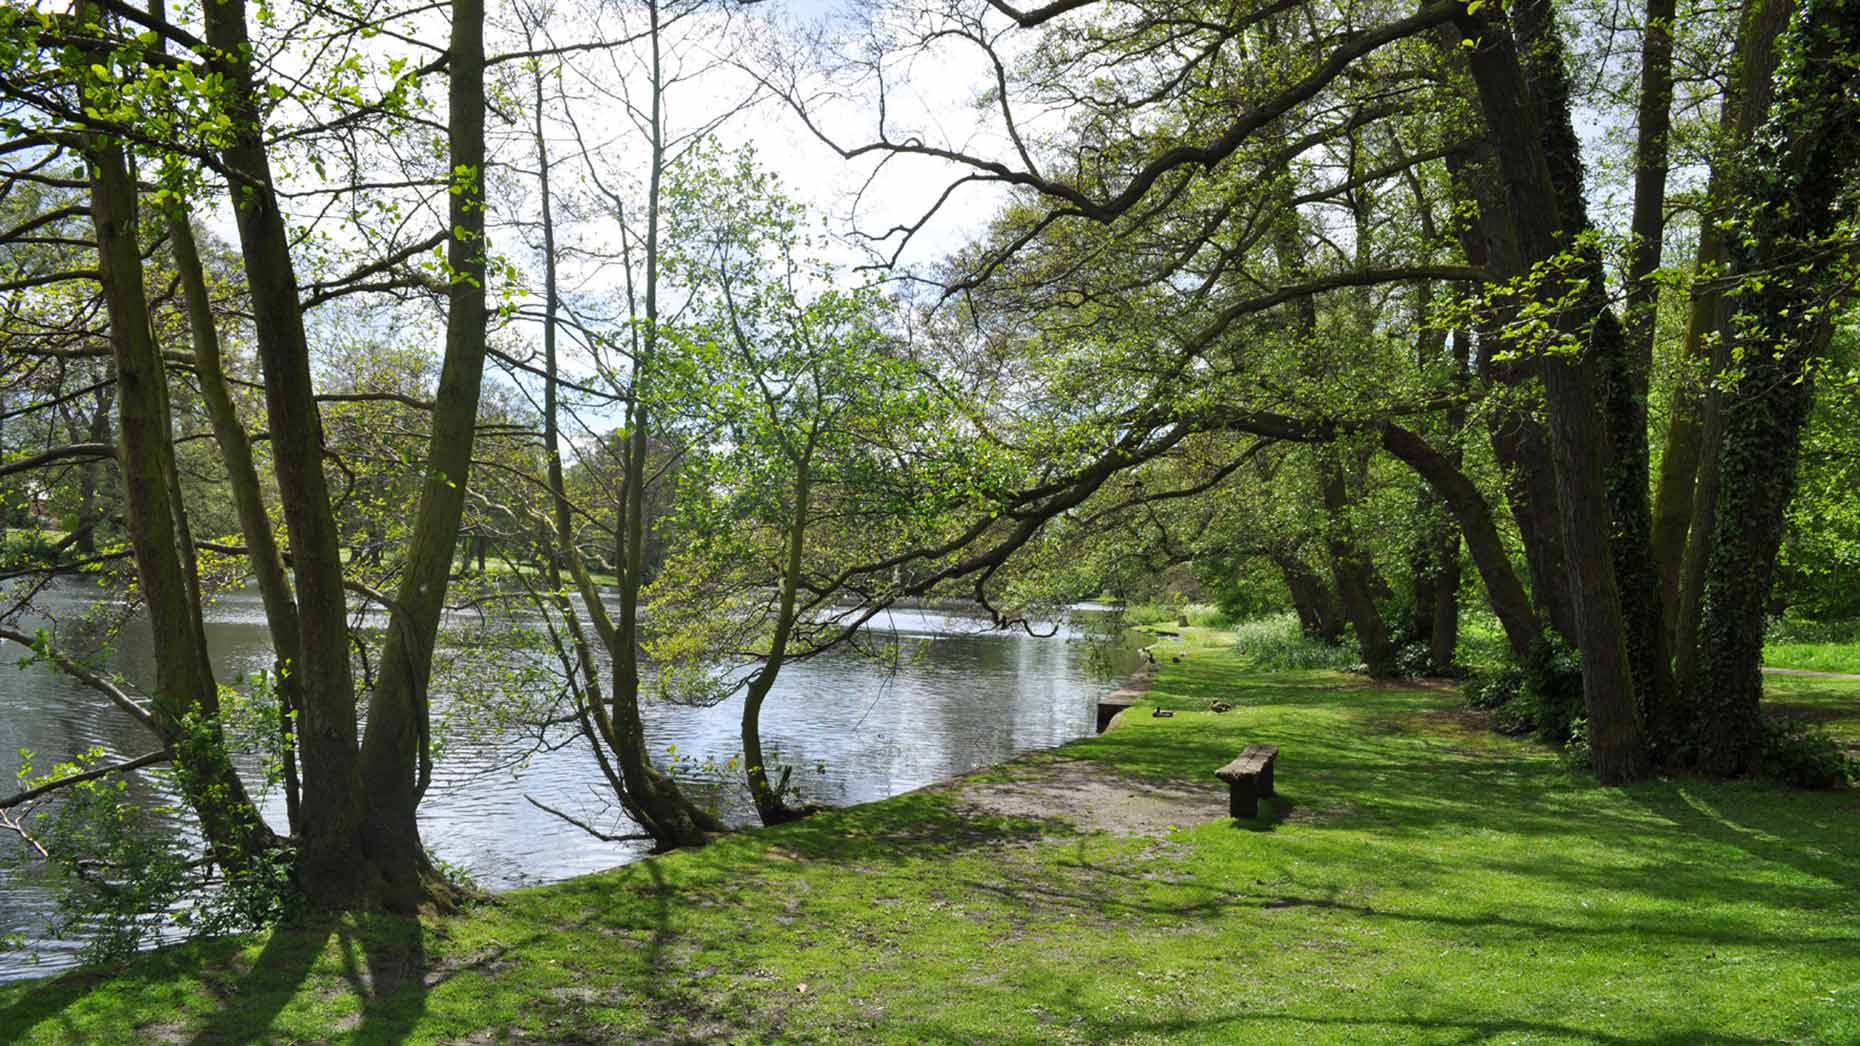 Boultham Park Lake